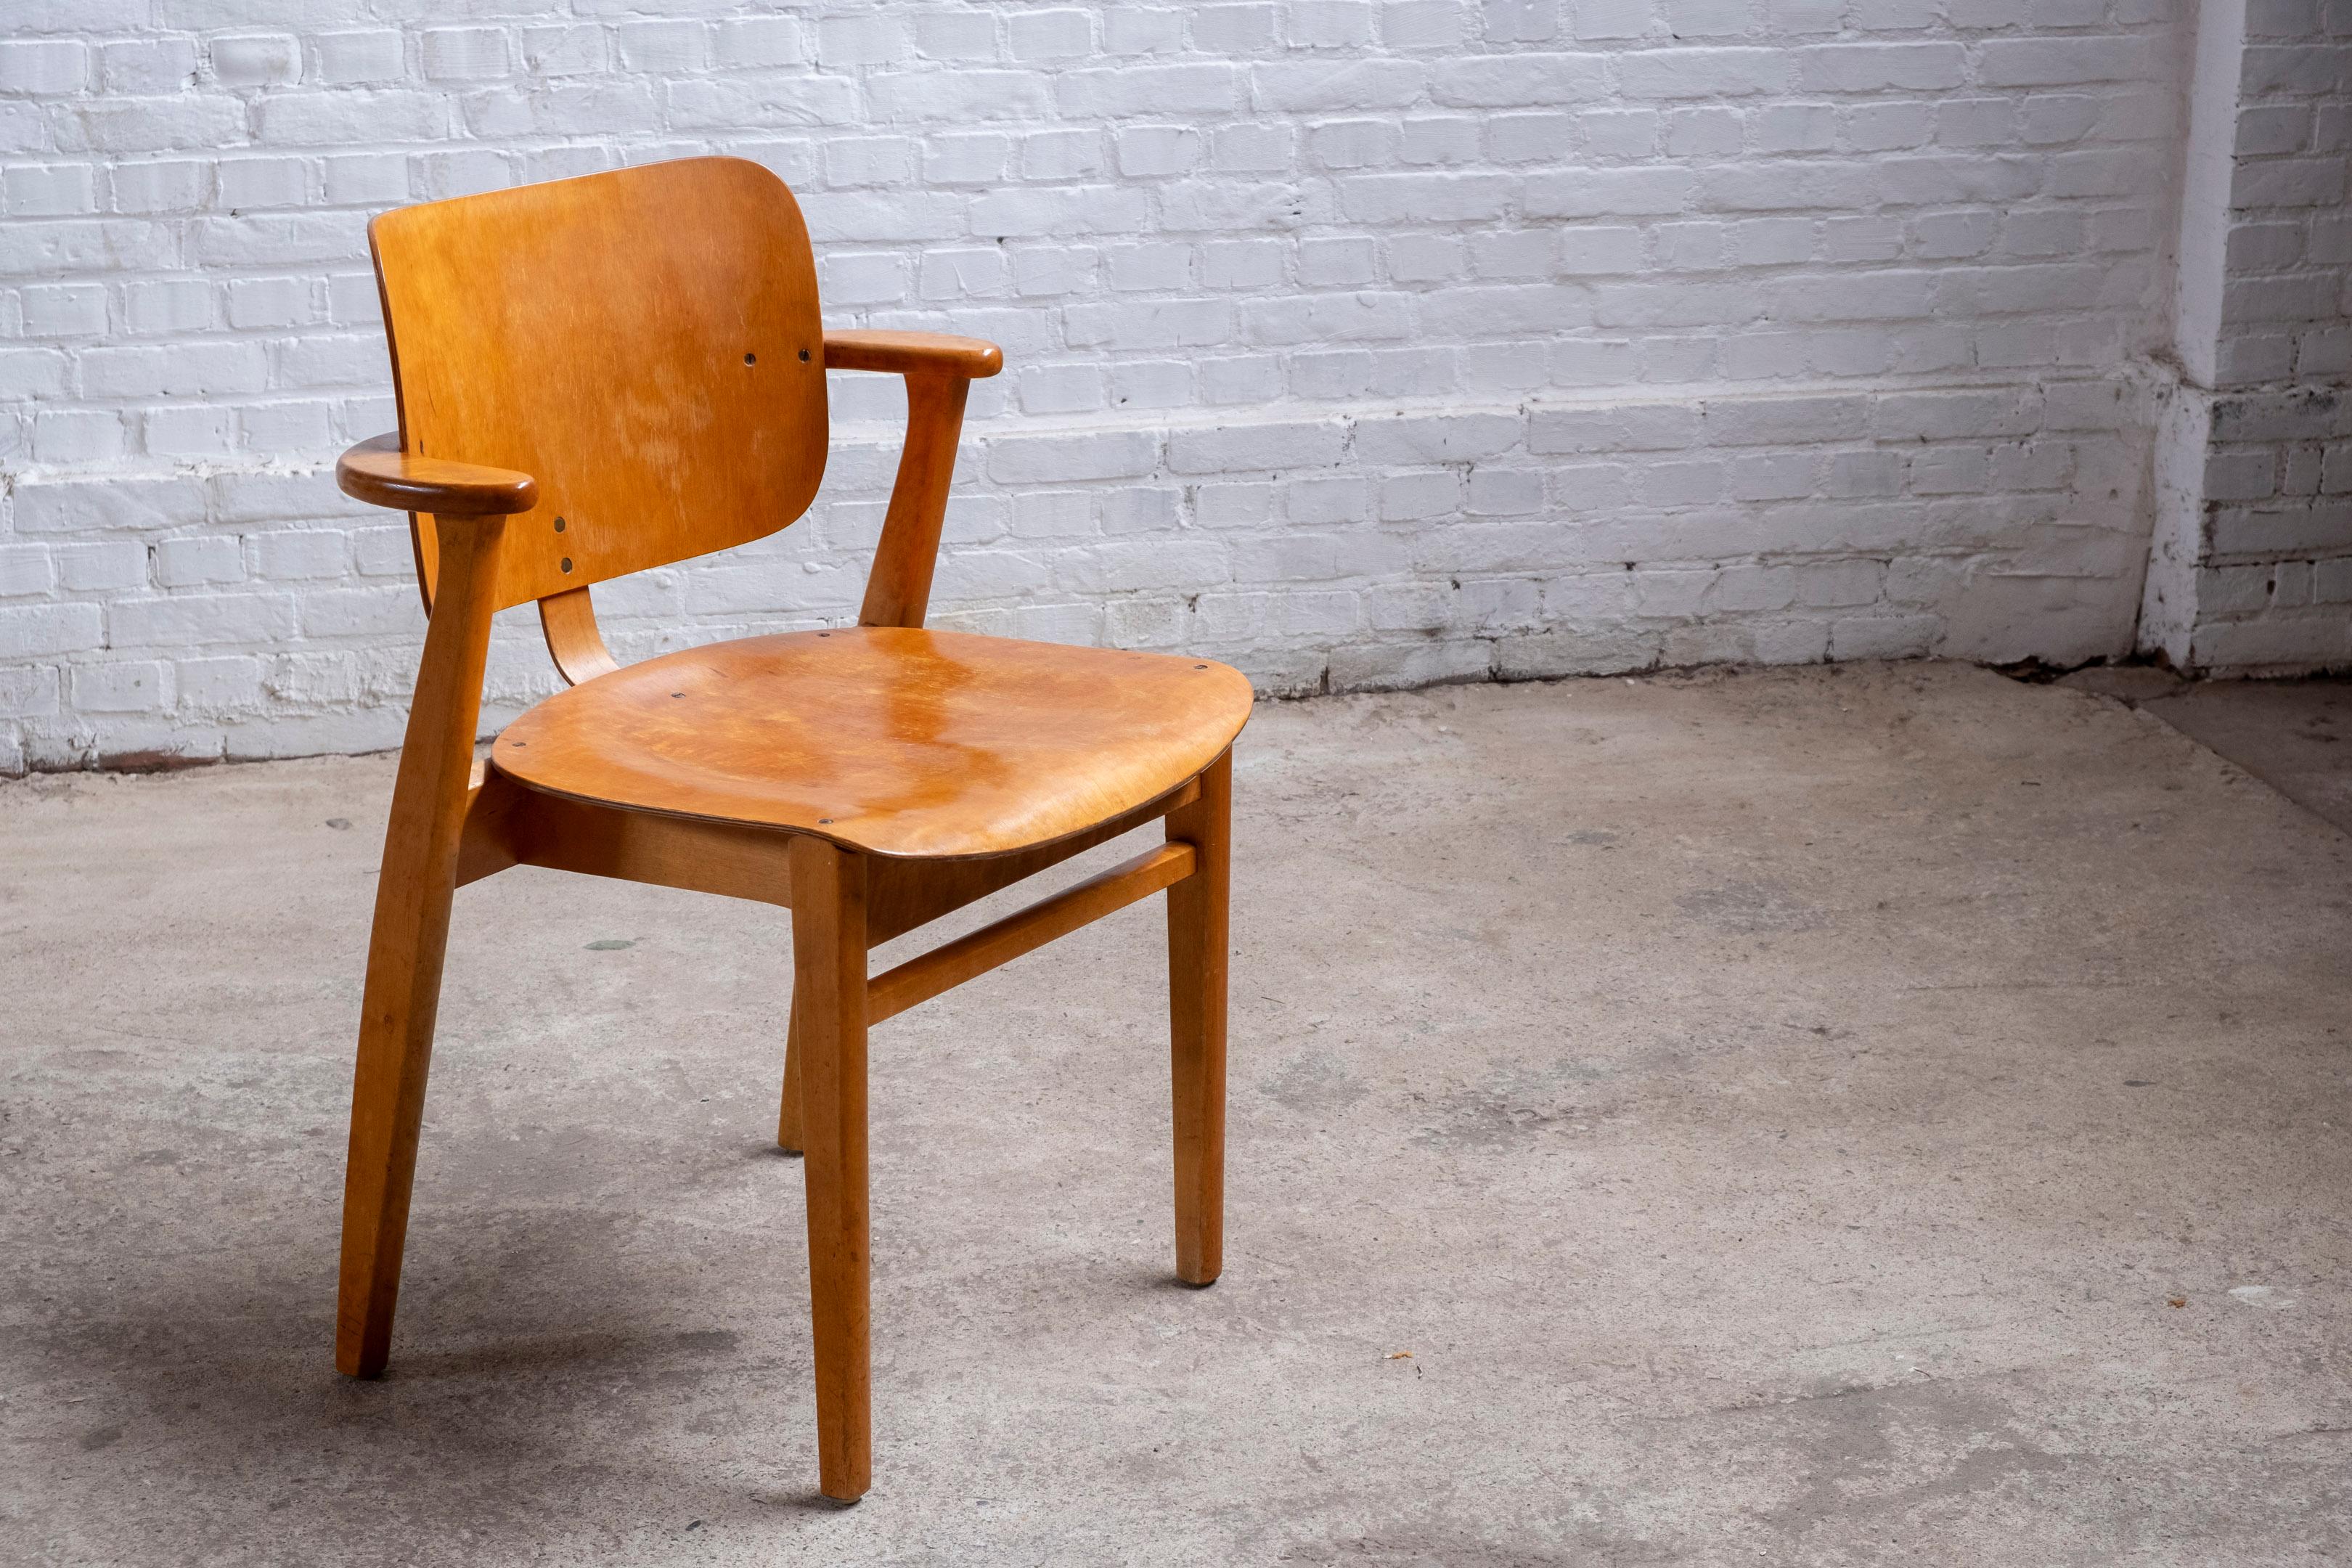 Première version de la chaise Domus d'Ilmari Tapiovaara, produite par Keravan Puuteollisuus dans les années 1950. La chaise Domus a été conçue à l'origine en 1946 dans le cadre d'une série de meubles destinés au complexe de logements pour étudiants